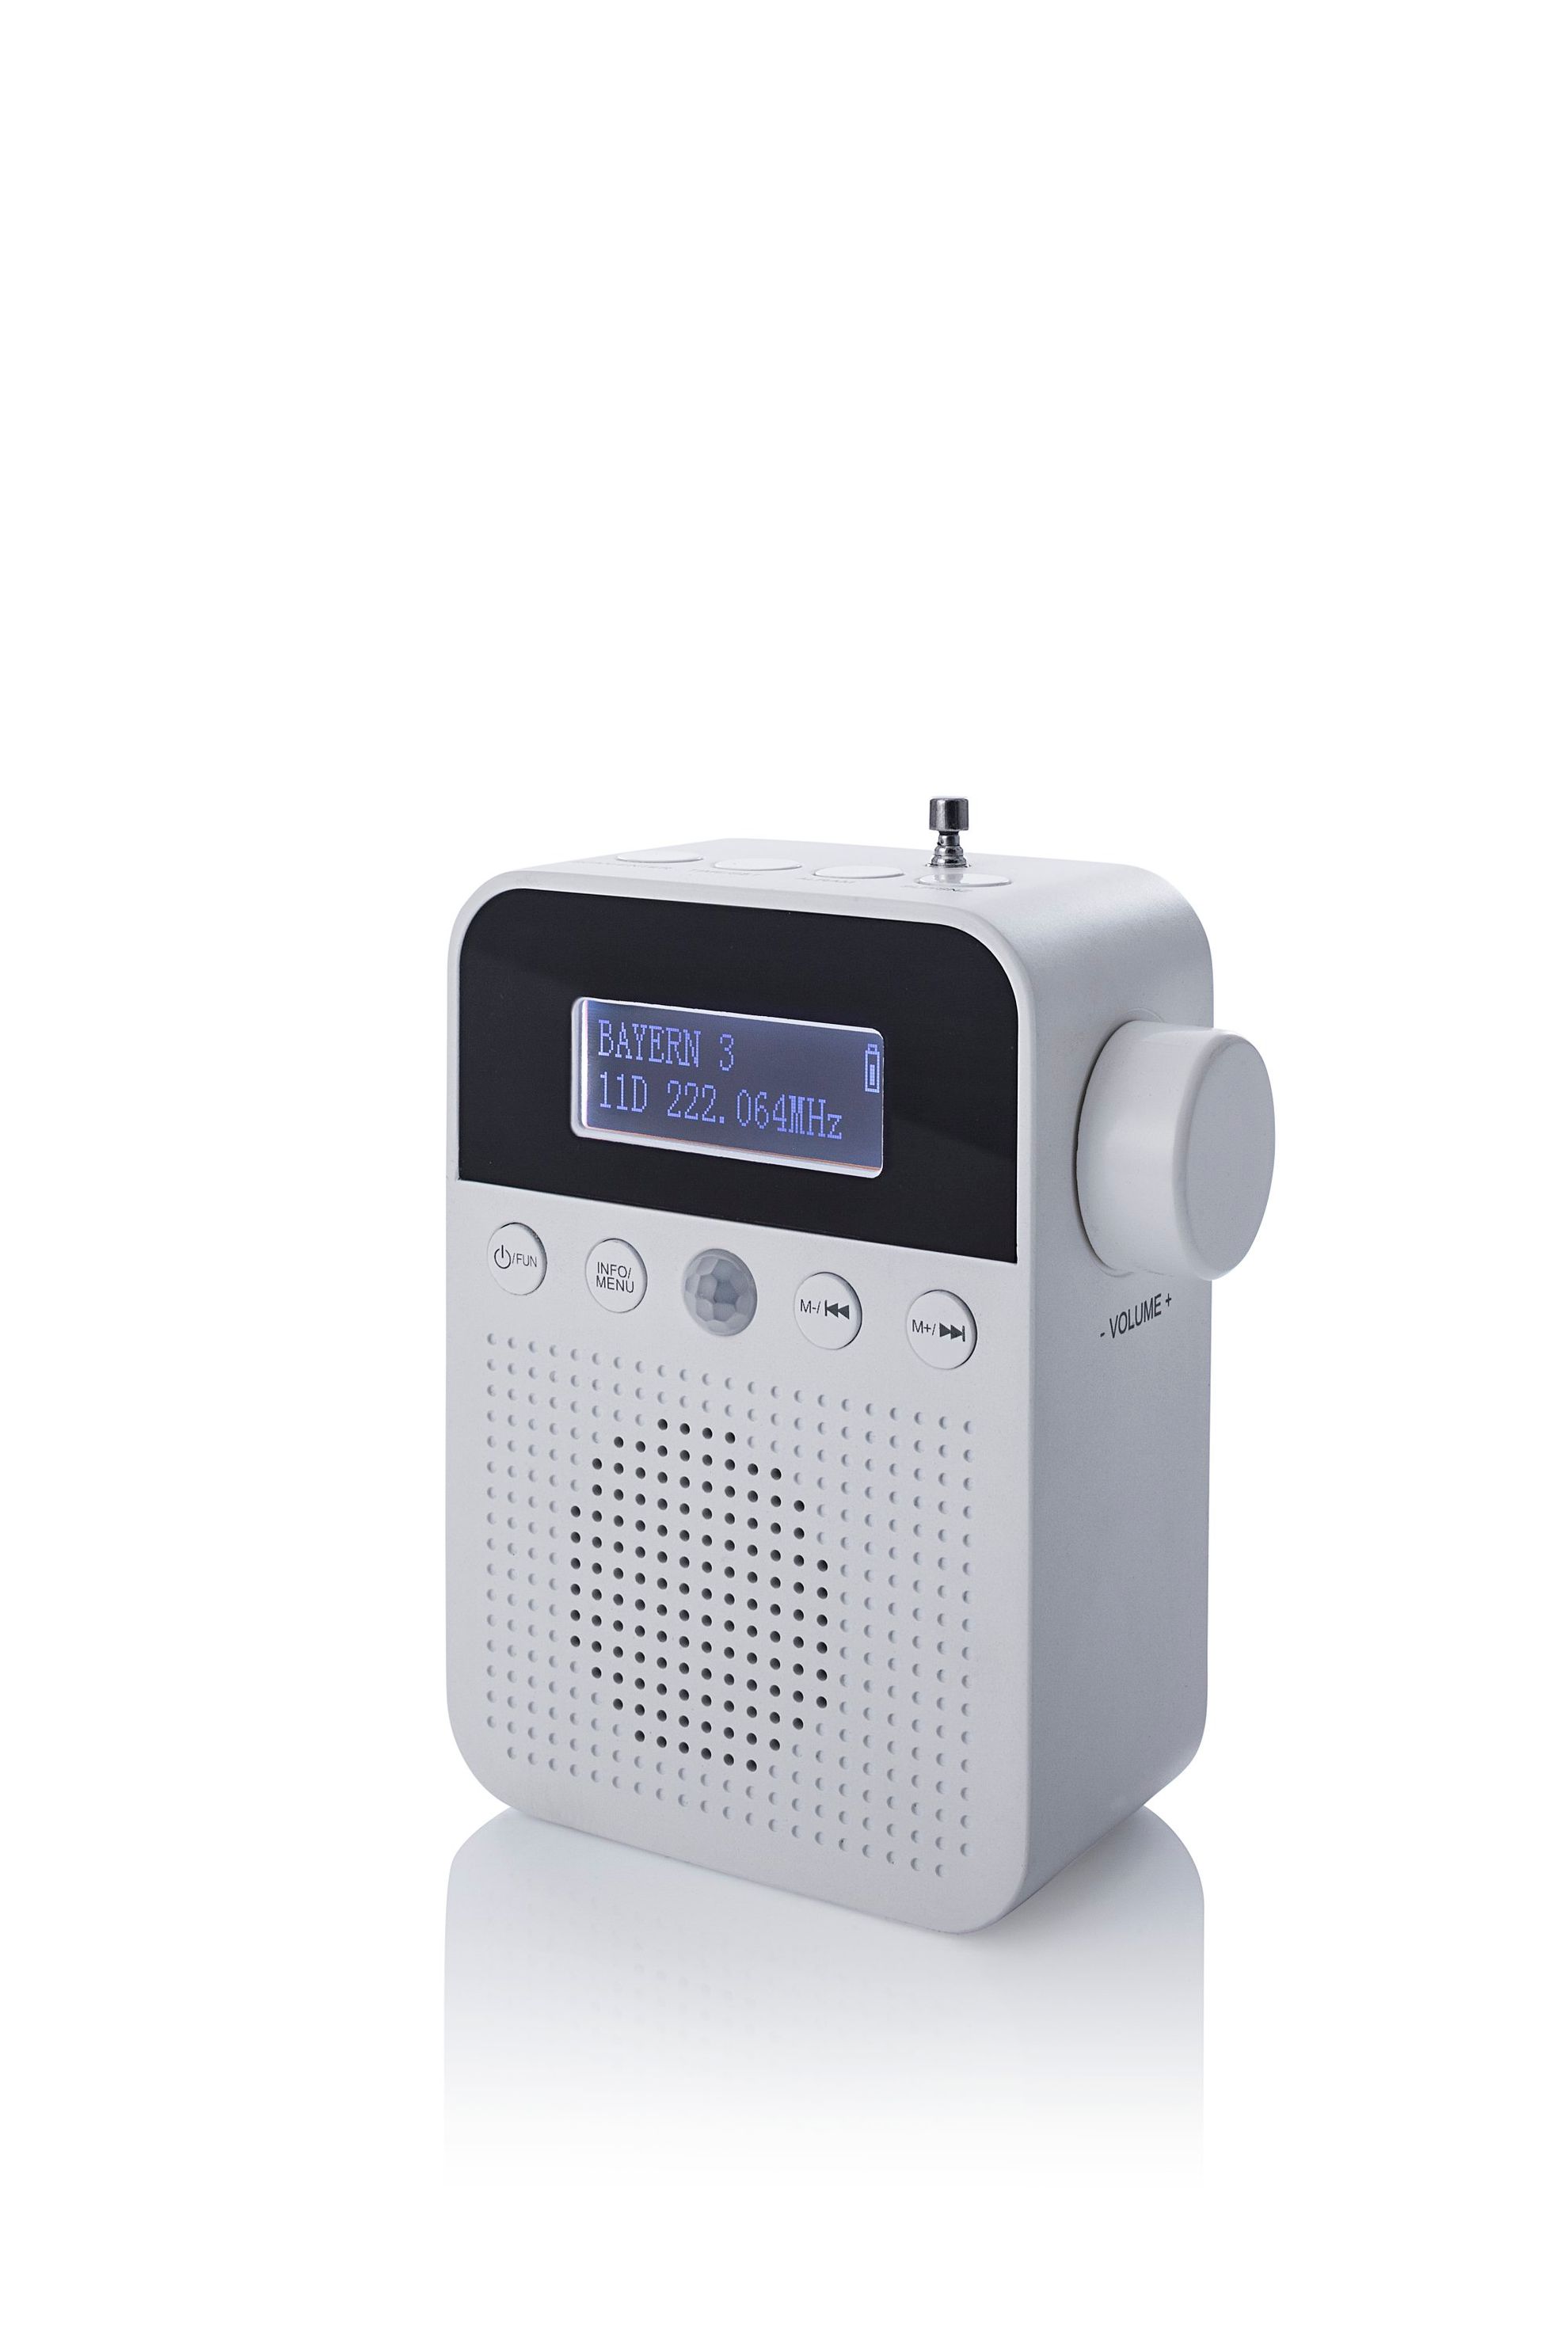 DAB+ Steckdosenradio mit Bewegungsmelder bestellen | Weltbild.at